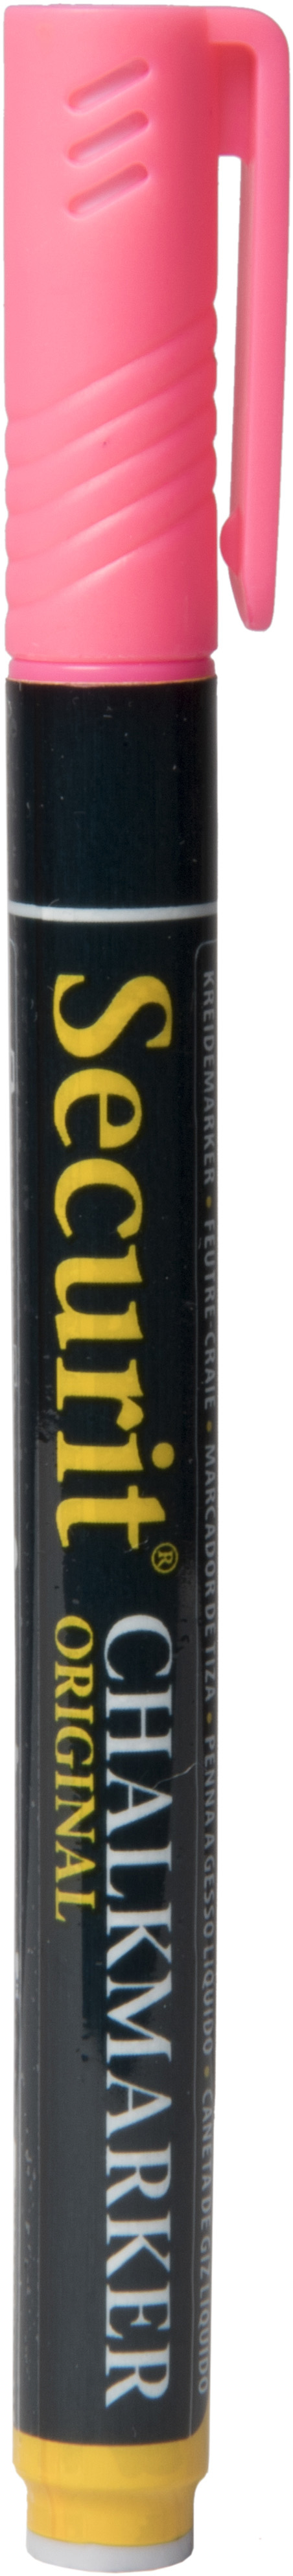 SECURIT Marker Craie 1-2mm SMA100-PI pink